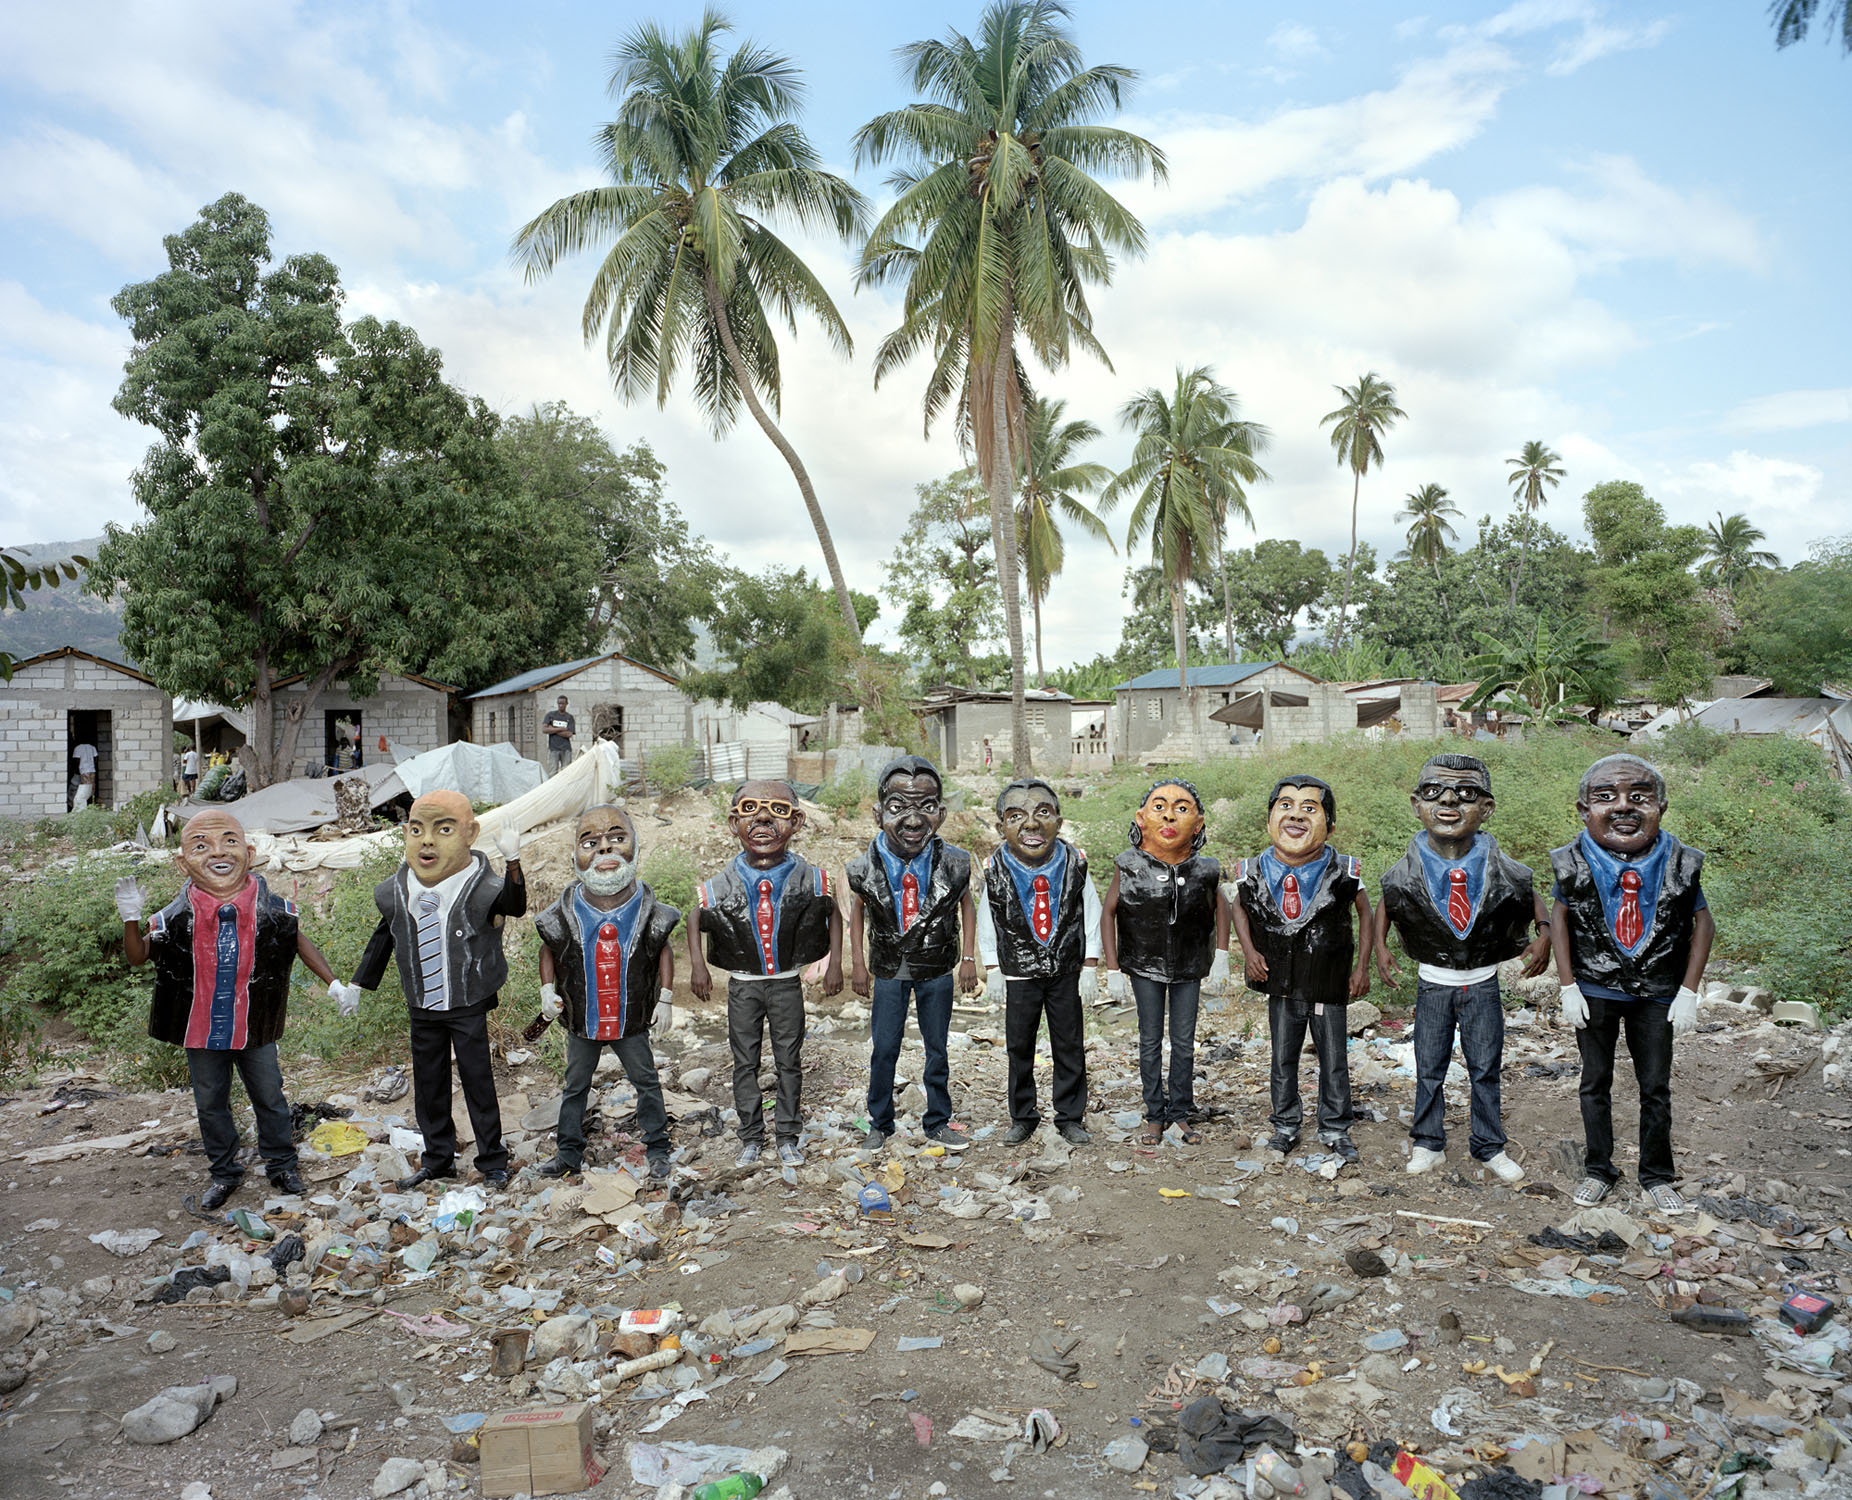 Papier-mch masks representing the last nine Haitian presidents, in chronological order from right to left, at the Jacmel carnival. Current president Michel Martelly, to the far left, holds the hand of his prime minister, Laurent Lamothe. Jacmel.Paolo WoodsÑINSTITUTE